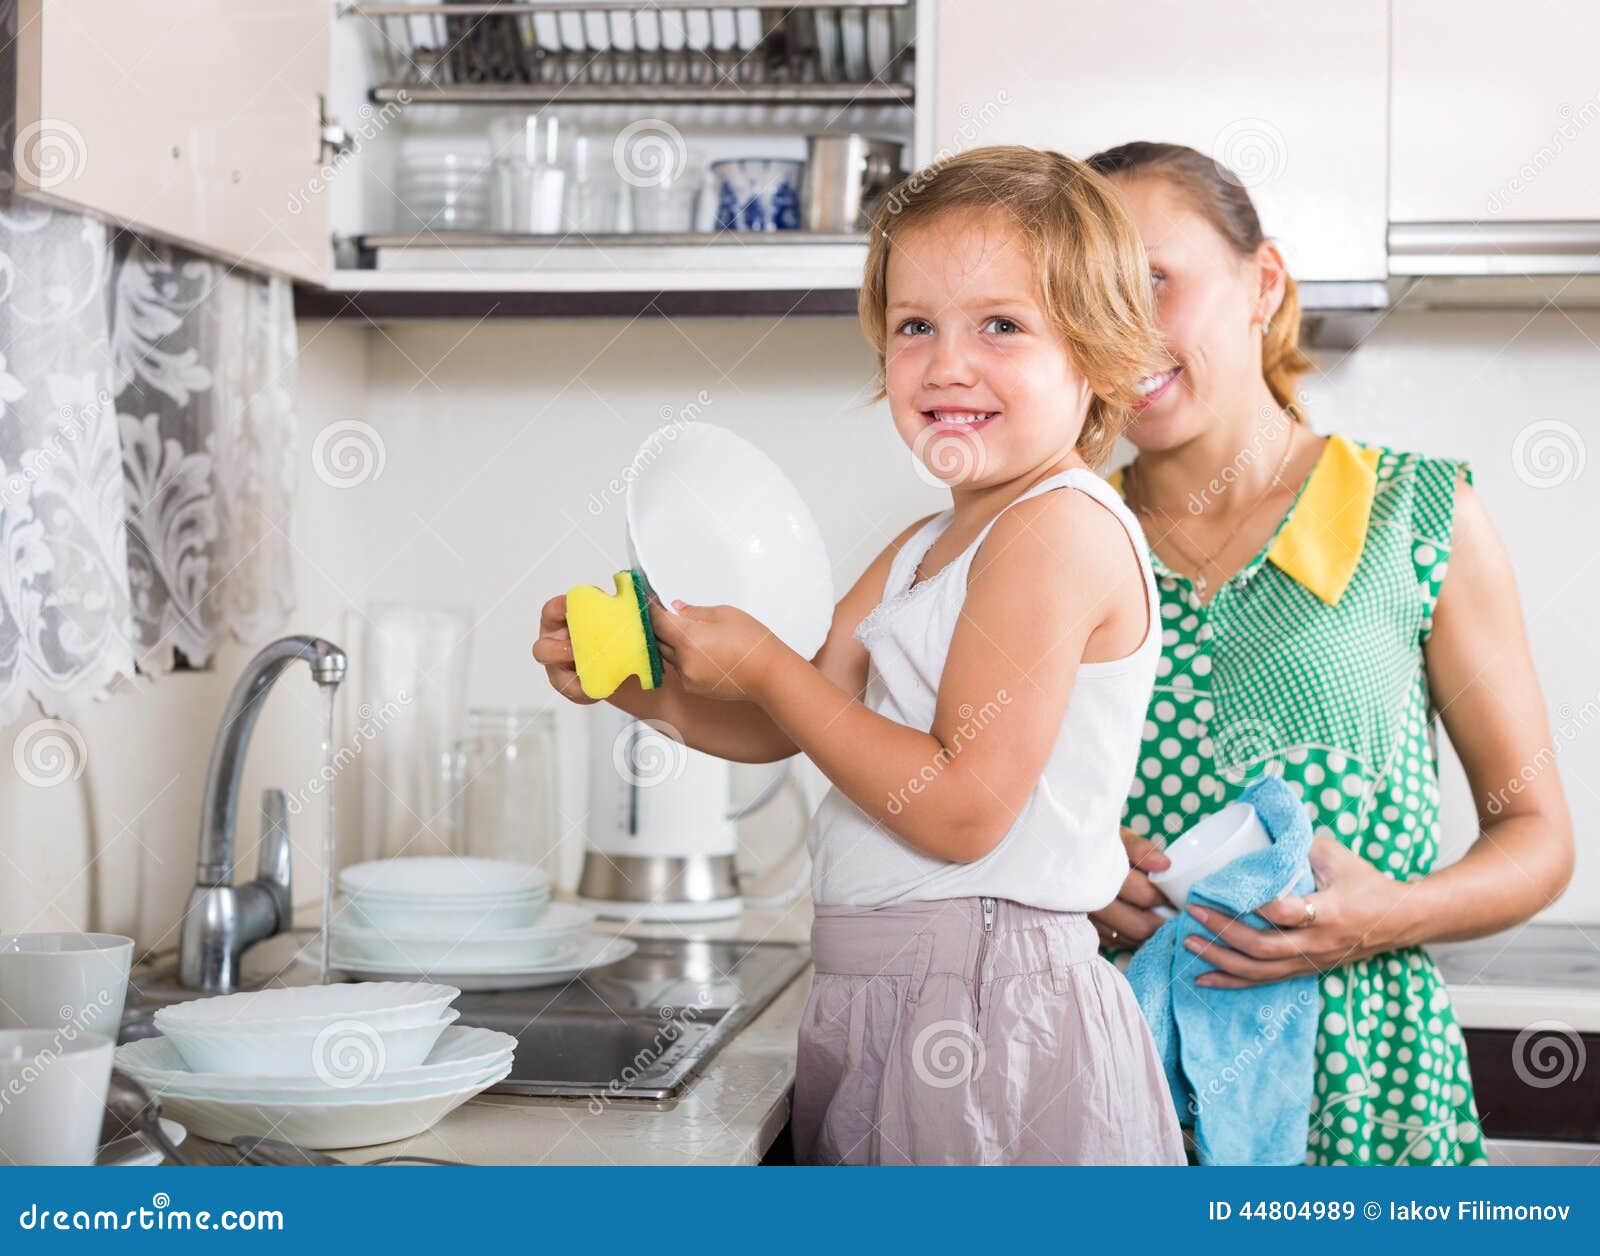 Дочка моет посуду. Помогать маме по дому. Мама с дочкой моют посуду. Посуда для девочек. Девочка помогает маме мыть посуду.